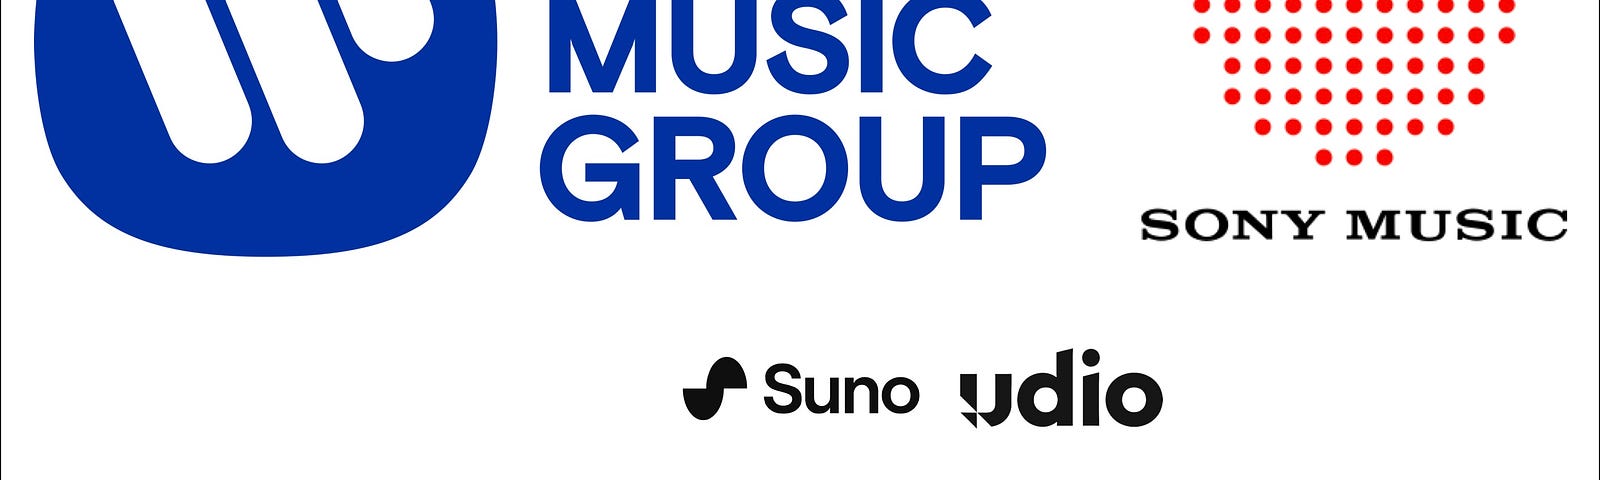 IMAGE: Warner Music, Sony Music and Universal Music threatening Suno and Udio